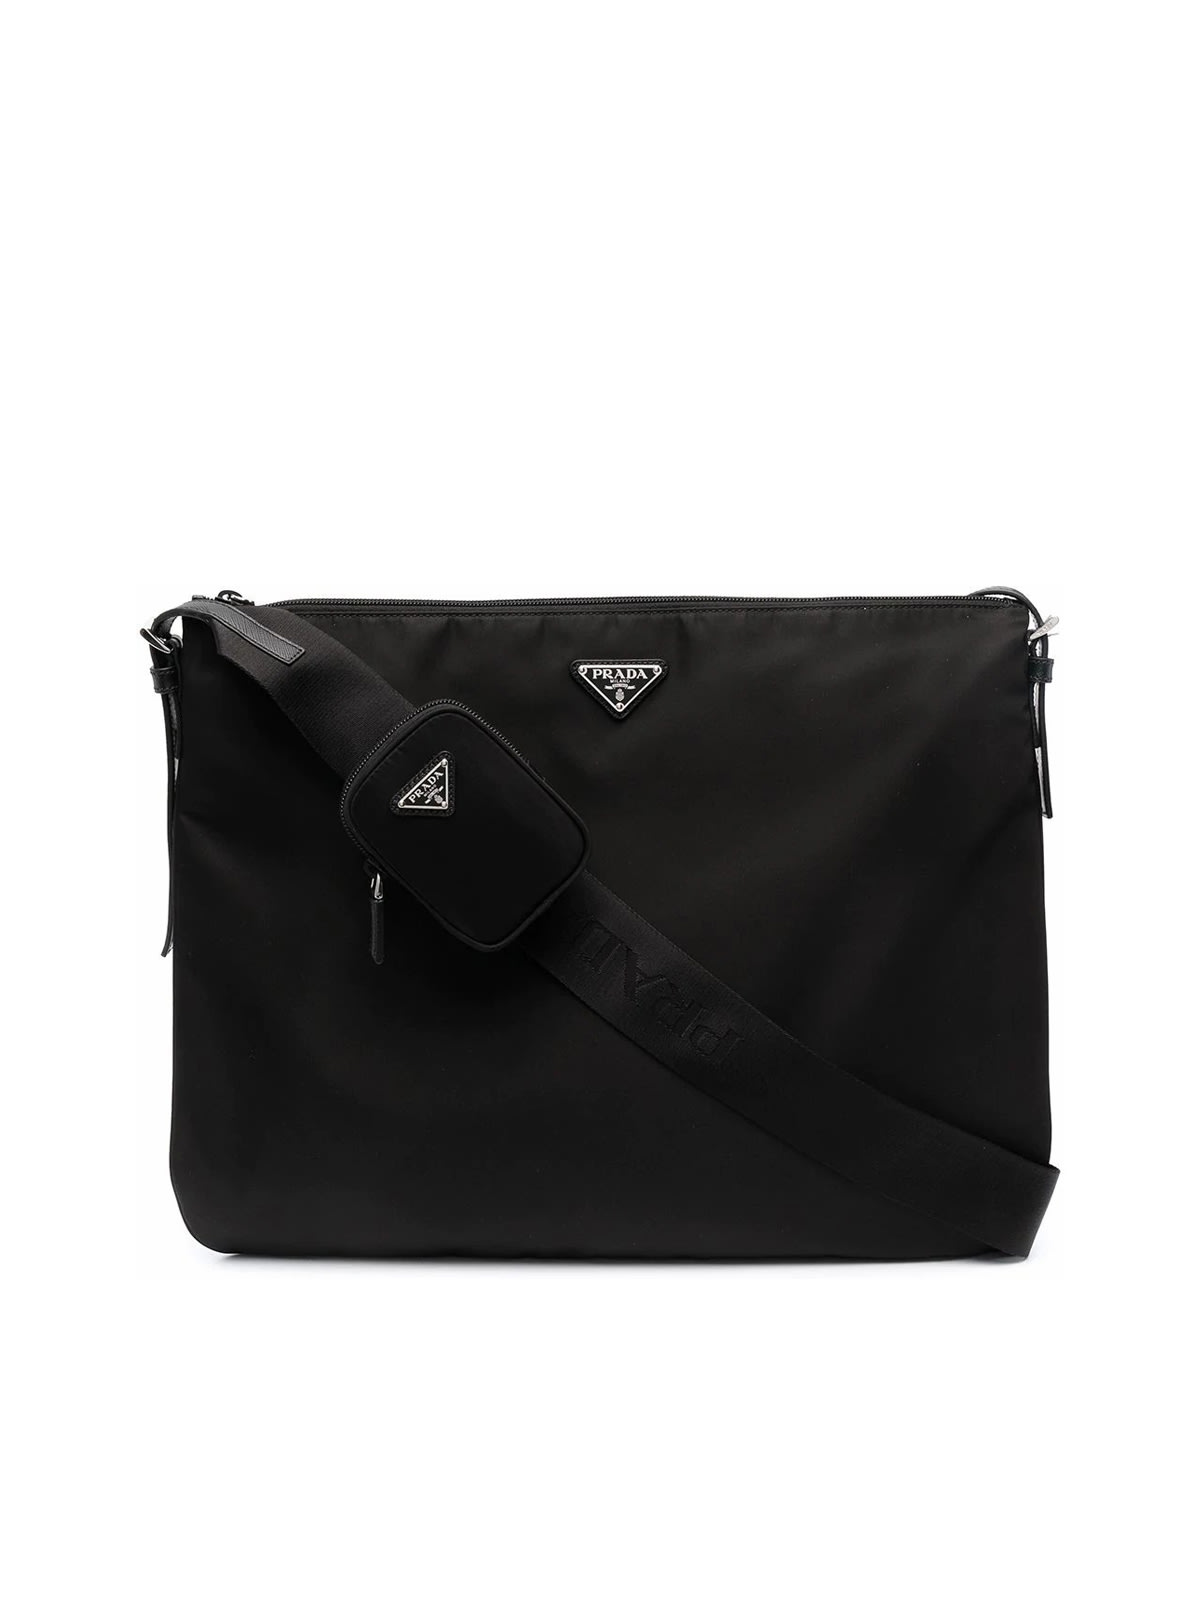 Prada Re-nylon And Saffiano Bag In Black